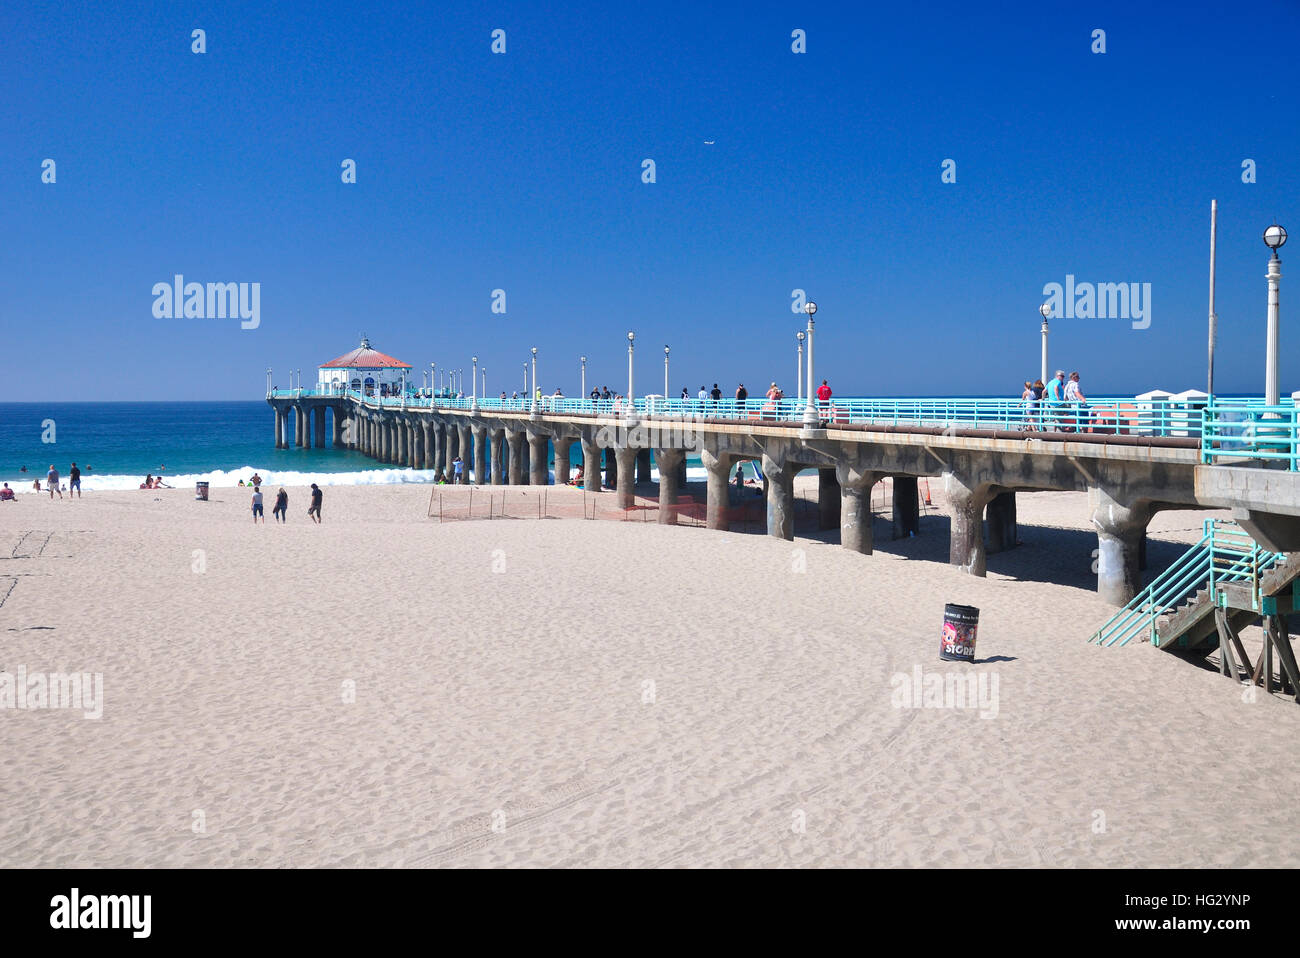 Settembre 20, 2016. Manhattan Beach, California. La gente che camminava sul punto di riferimento manhattan beach pier in Manhattan Beach California sul pacifico Foto Stock